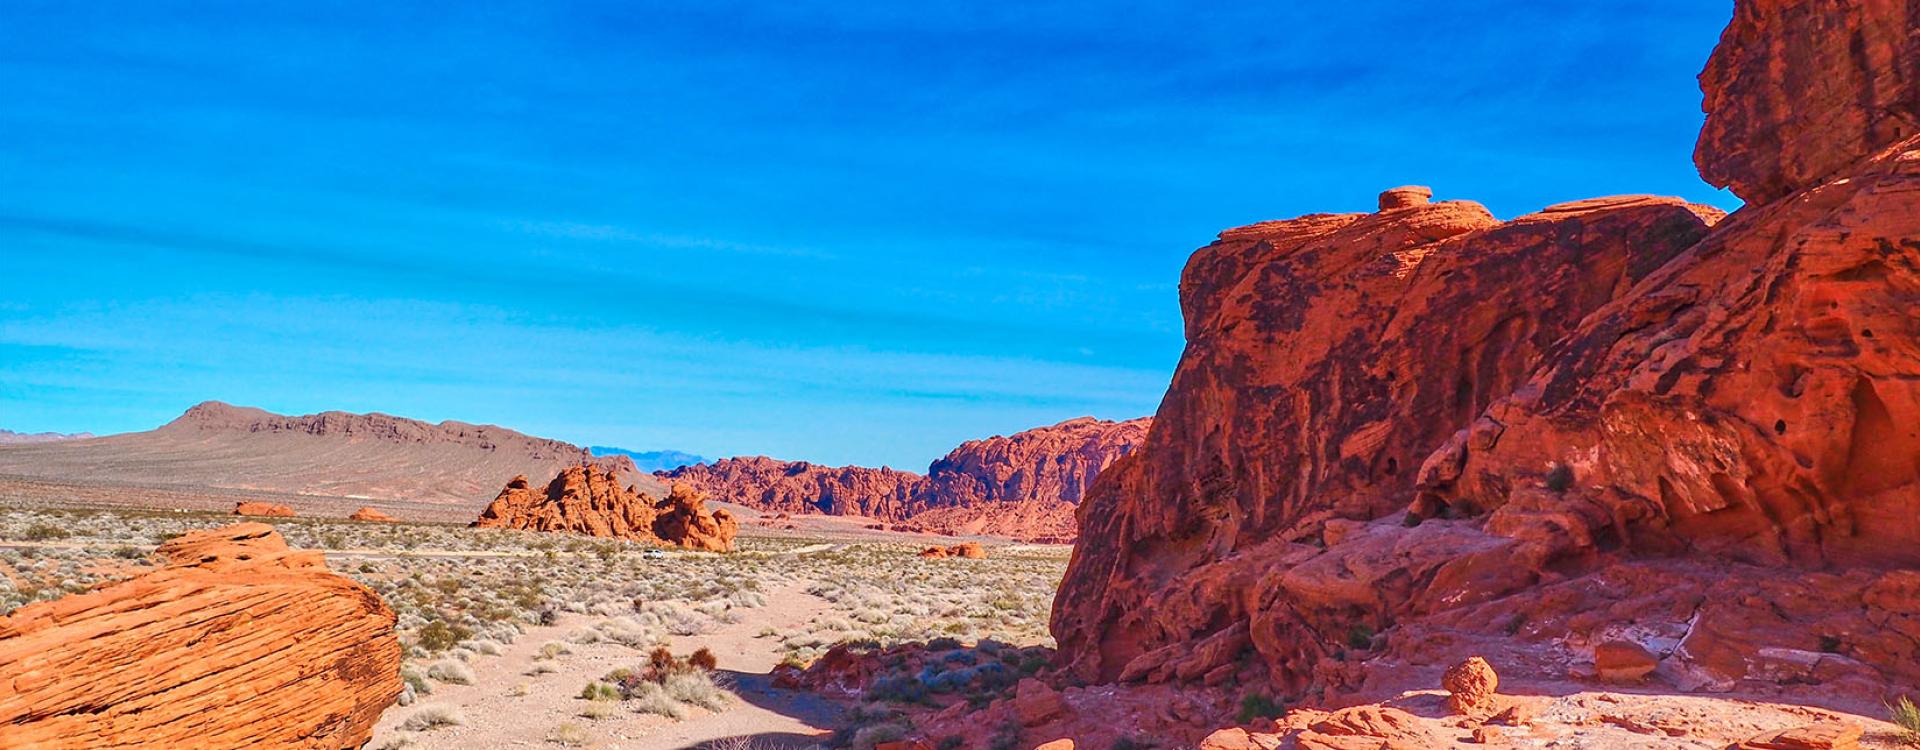 Nevada desert red rock